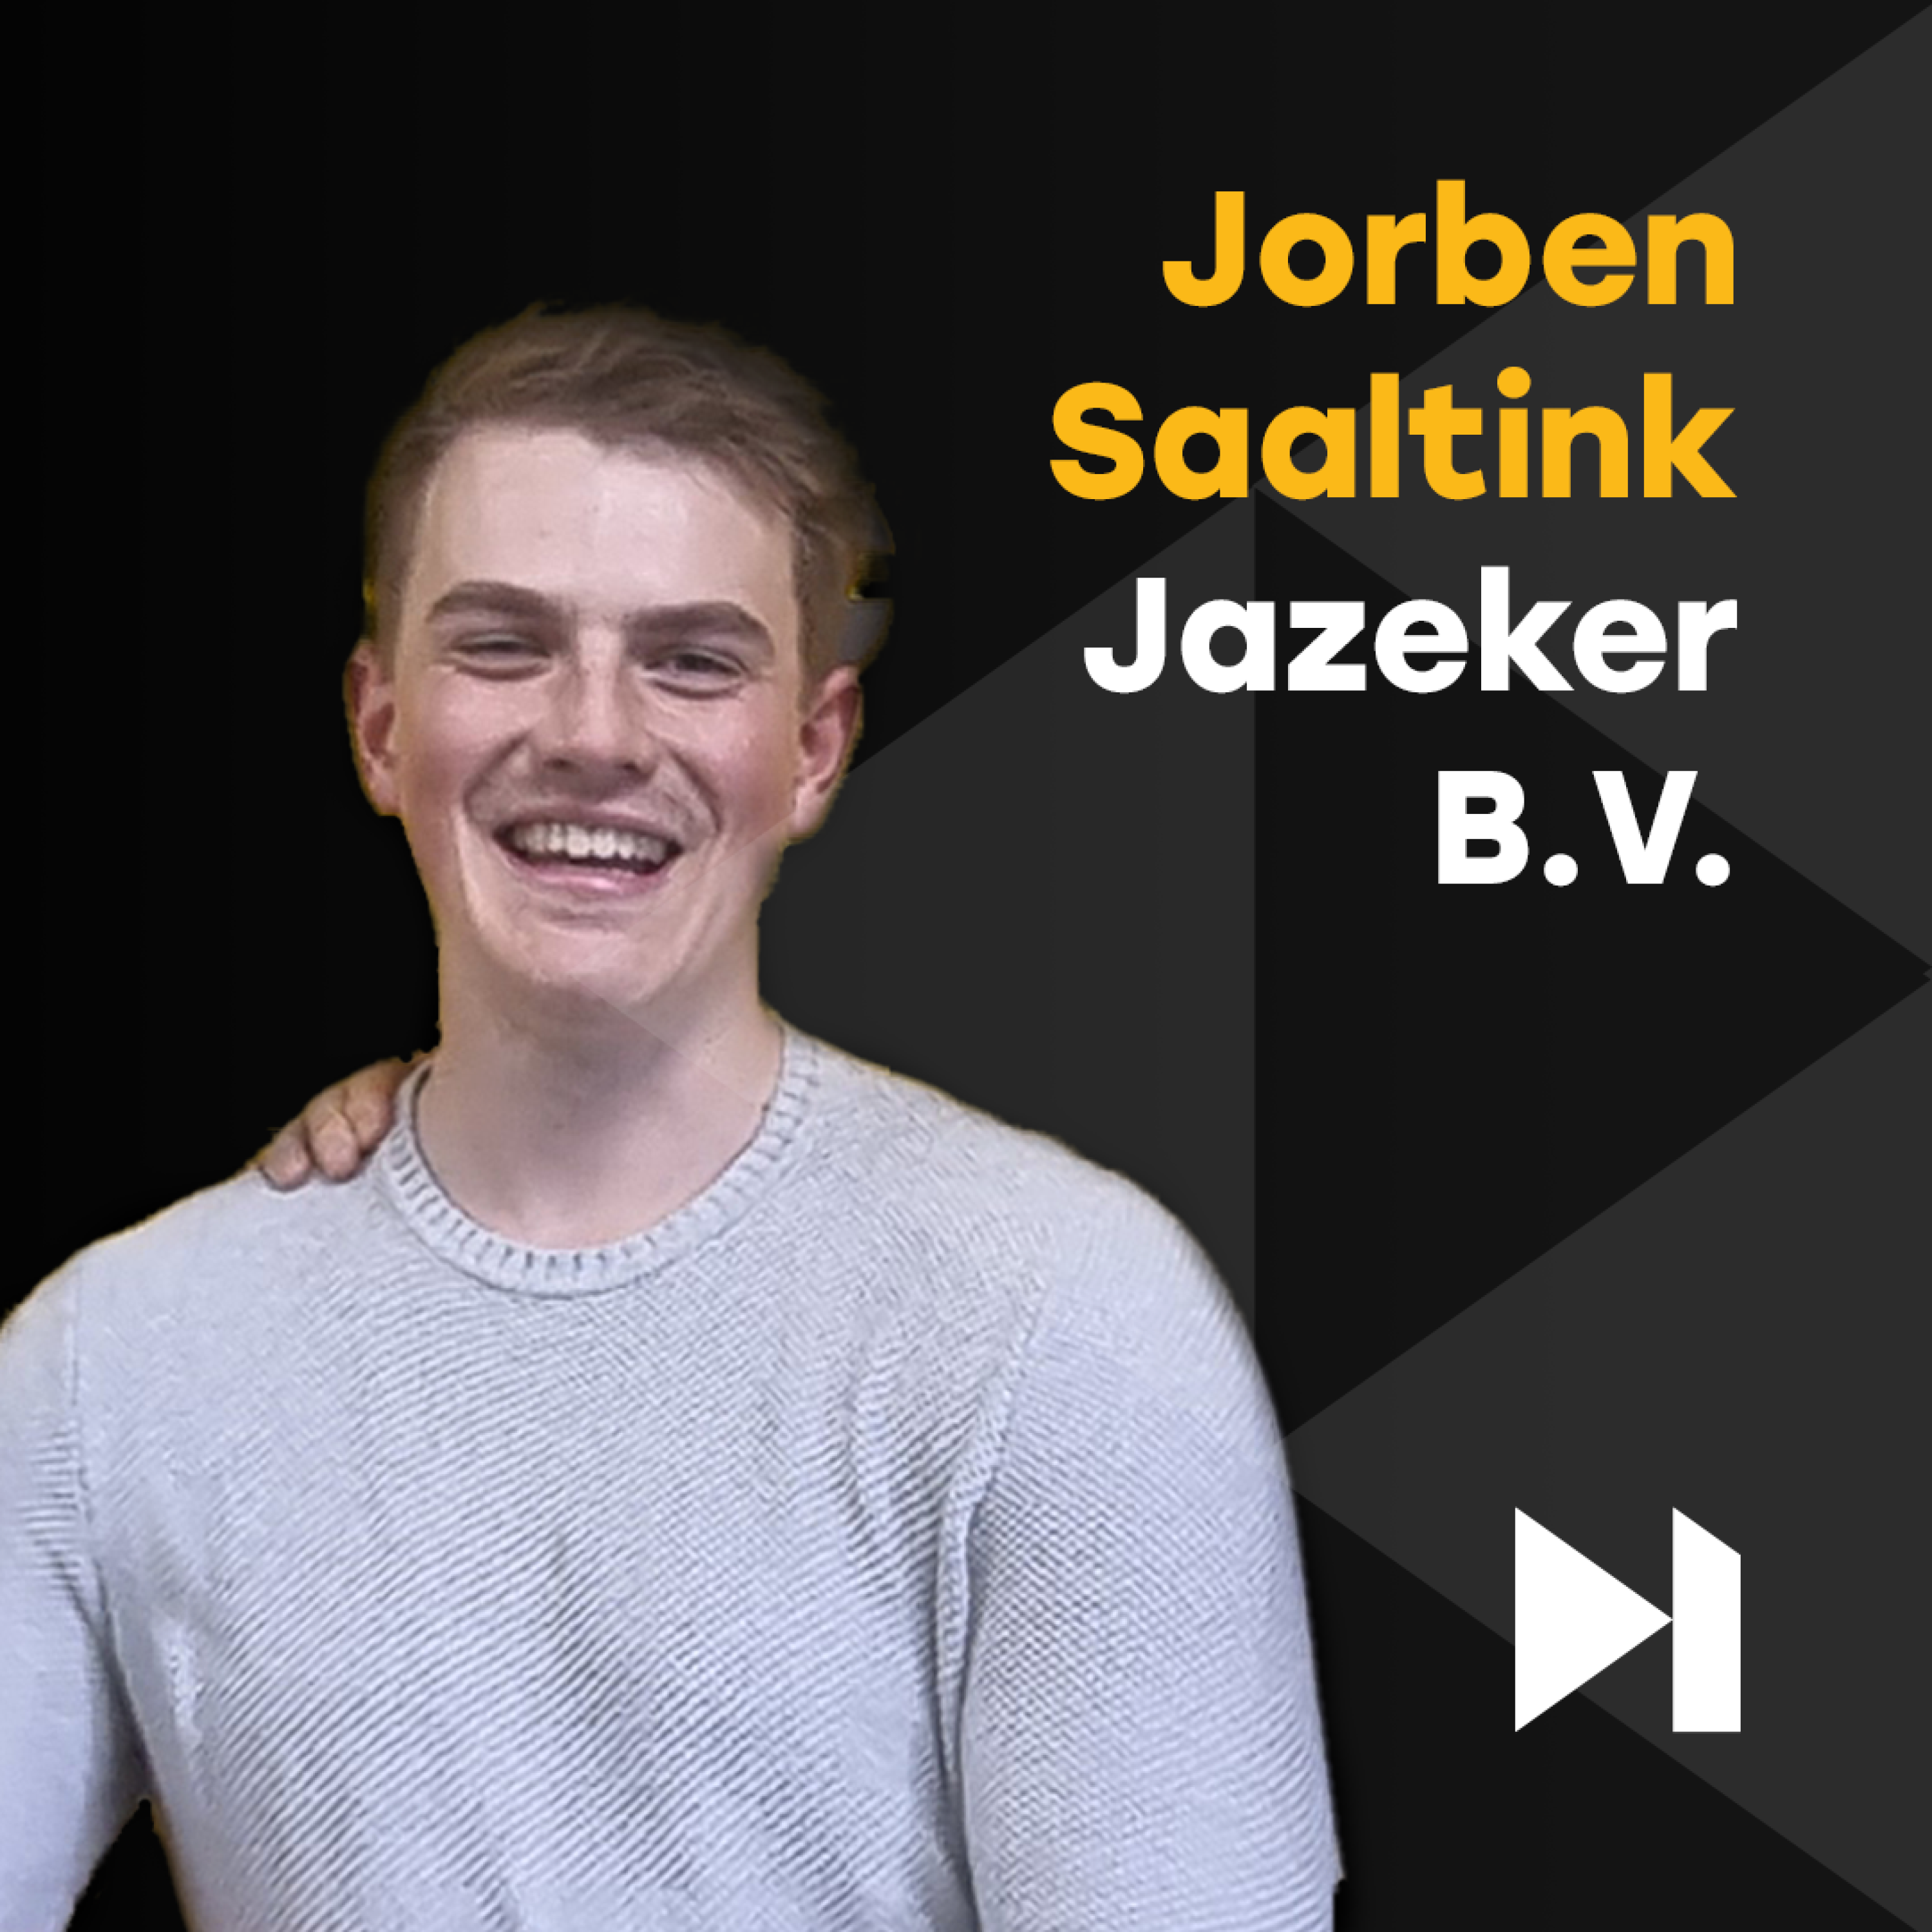 Jorben Saaltink van Jazeker B.V. over HOTEL KOPEN, BALI en INVESTEREN | Skip to Action Podcast S4E5